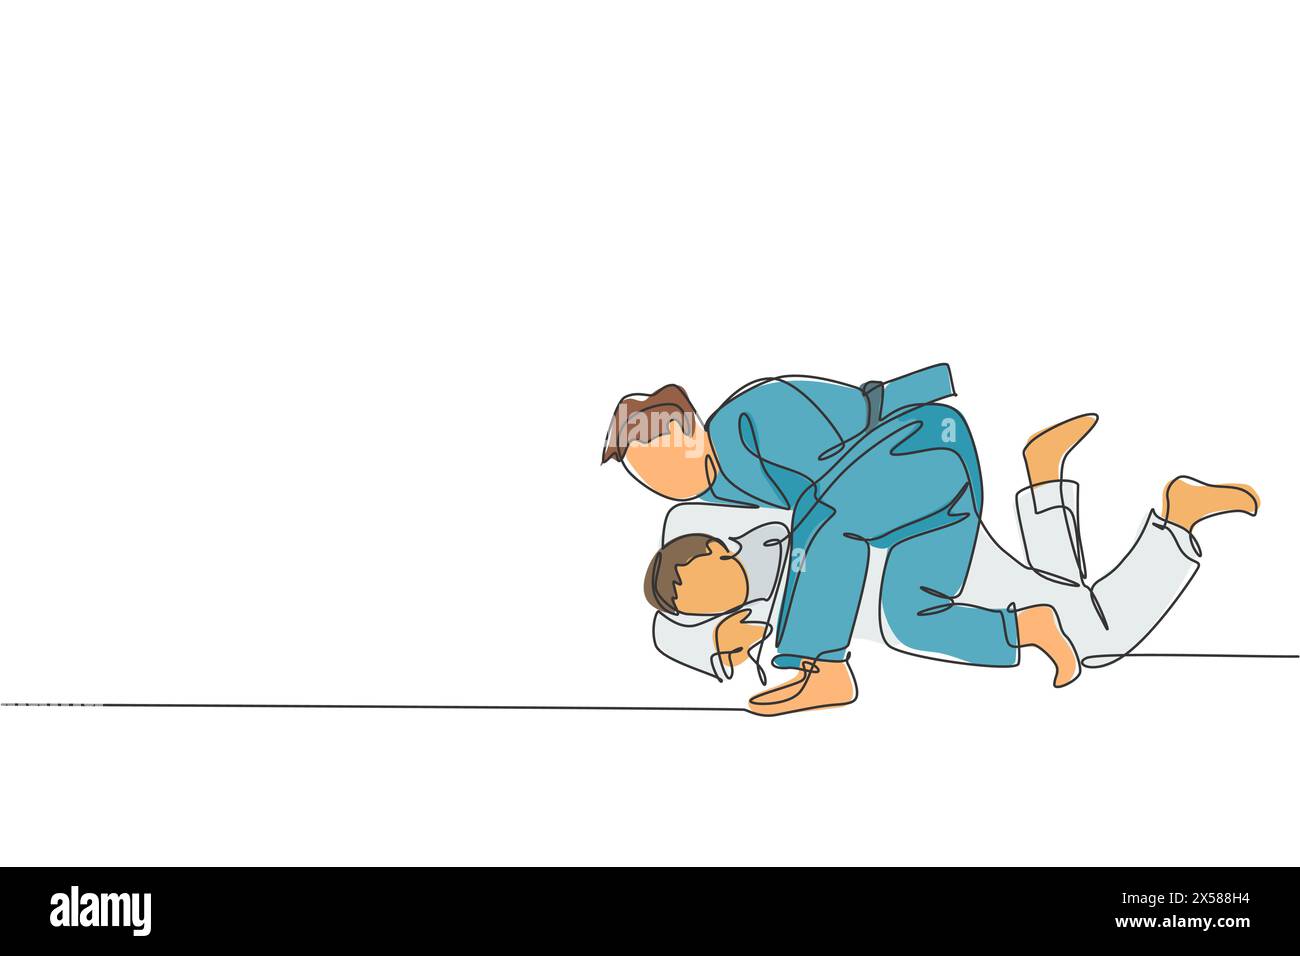 Un dessin au trait continu de deux jeunes hommes sportifs qui s'entraînent à la technique du judo à la salle de sport. Concept de compétition sportive de combat de JIU jitsu. Dynamique s Illustration de Vecteur